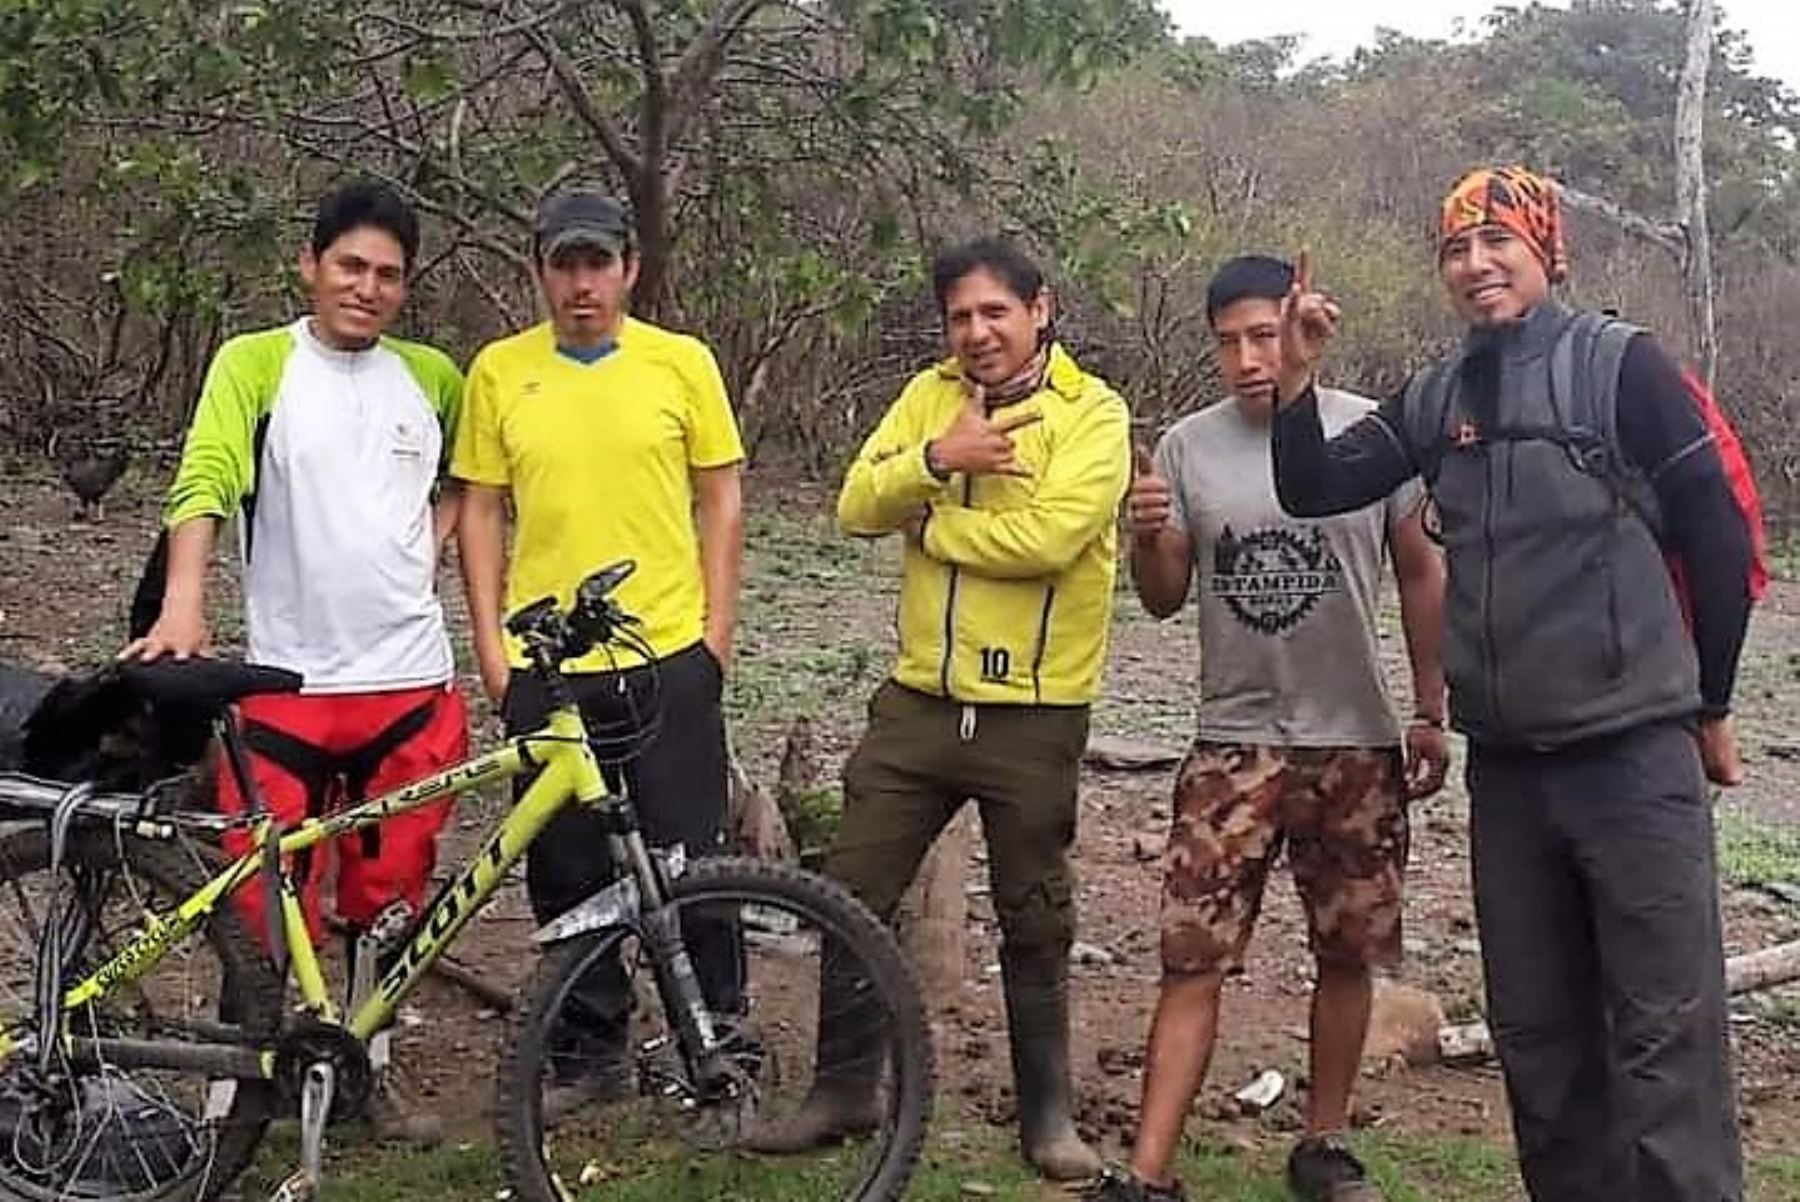 Familiares reportaron la desaparición de tres guías de turismo en la región Cusco. En el grupo de cinco personas que partió en bicicleta de la Ciudad Imperial estaban Edwar Cereceda Bravo (42), Vladimir Ilich Yábar Deza (40) y Mario Castillón (42). Foto: ANDINA/Difusión